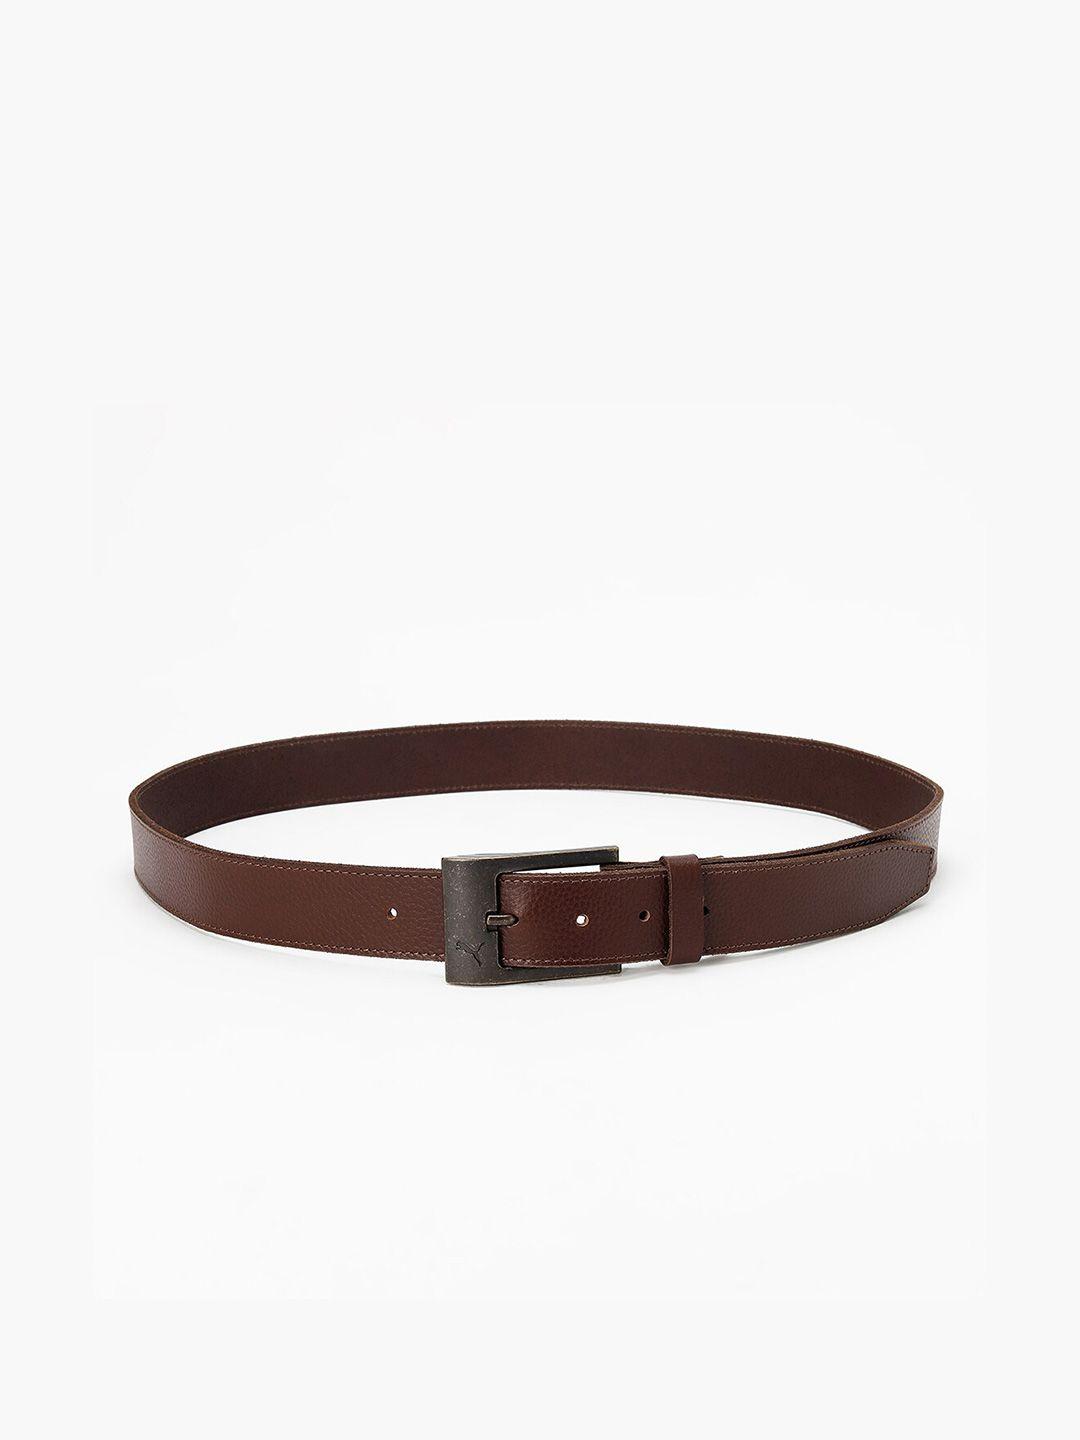 puma-stylised-textured-genuine-leather-belt